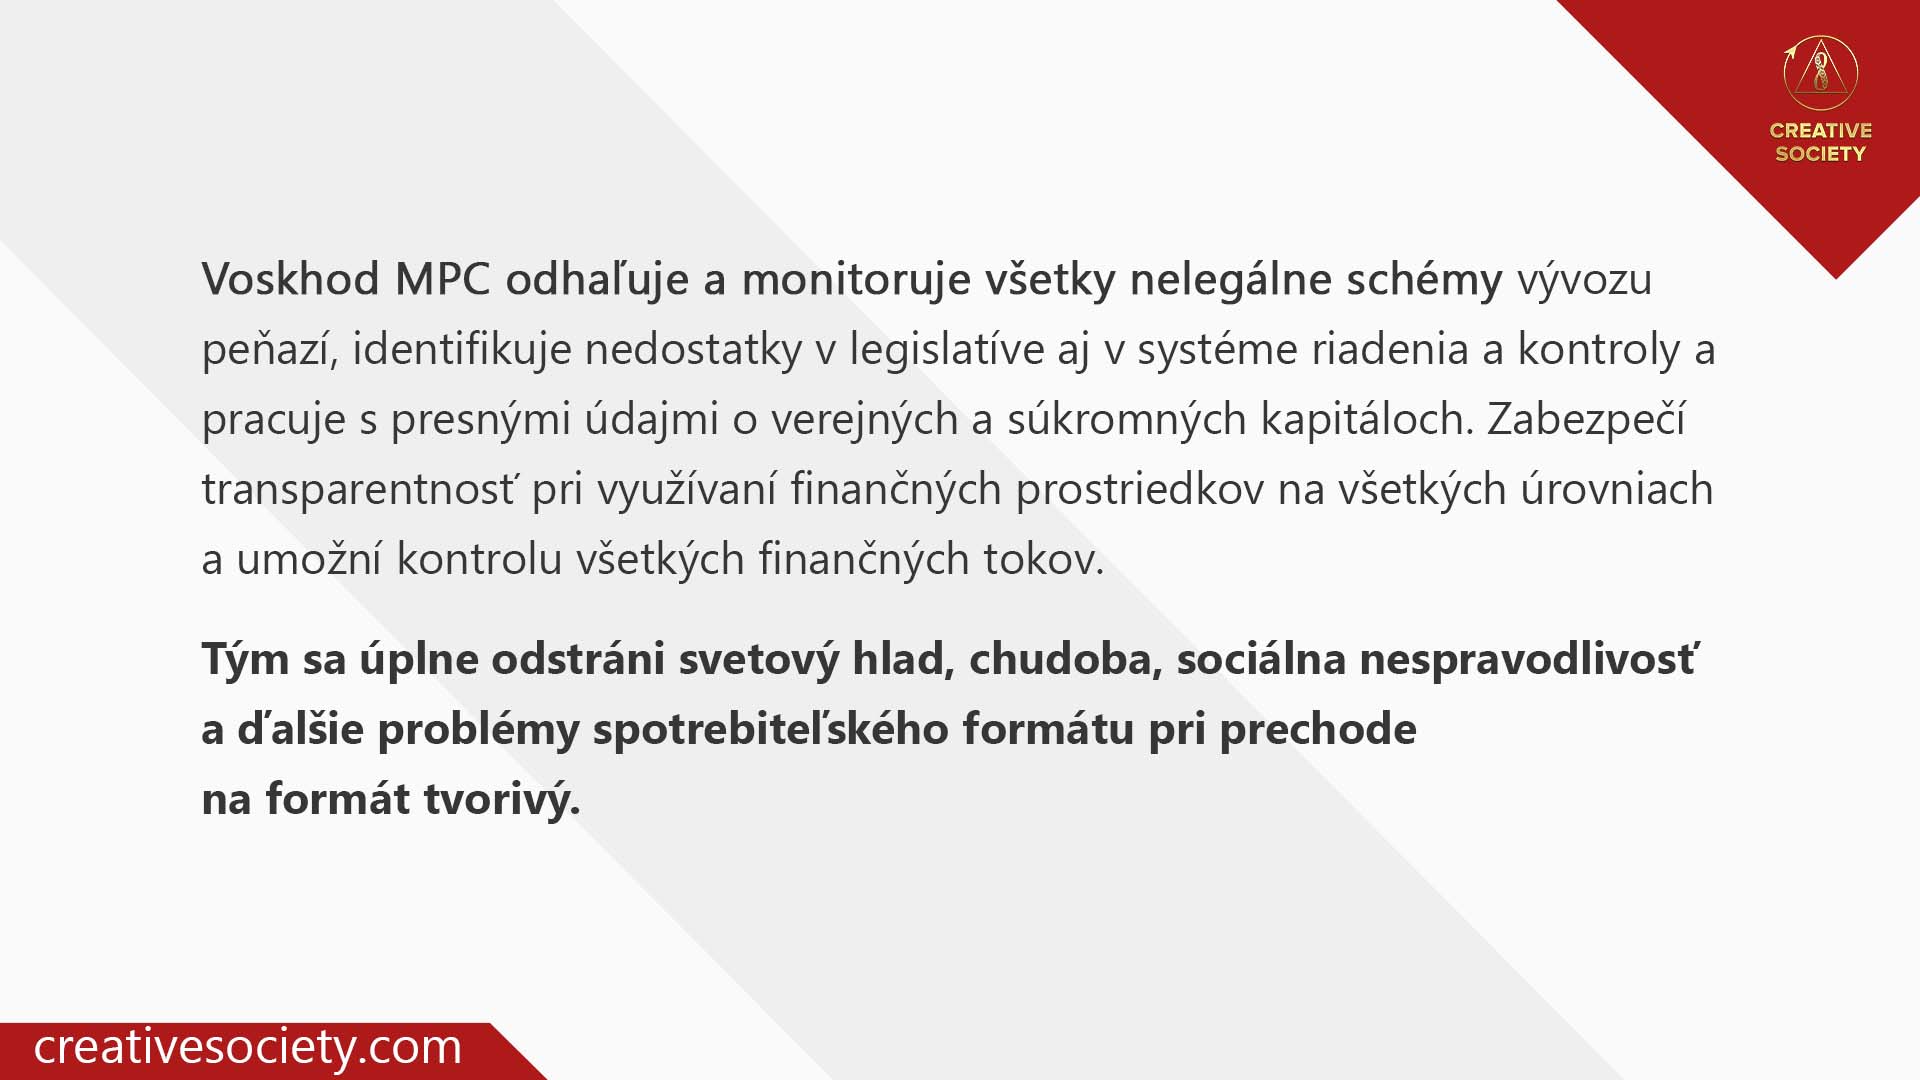 Voskhod MPC odhaľuje a monitoruje všetky nelegálne schémy.